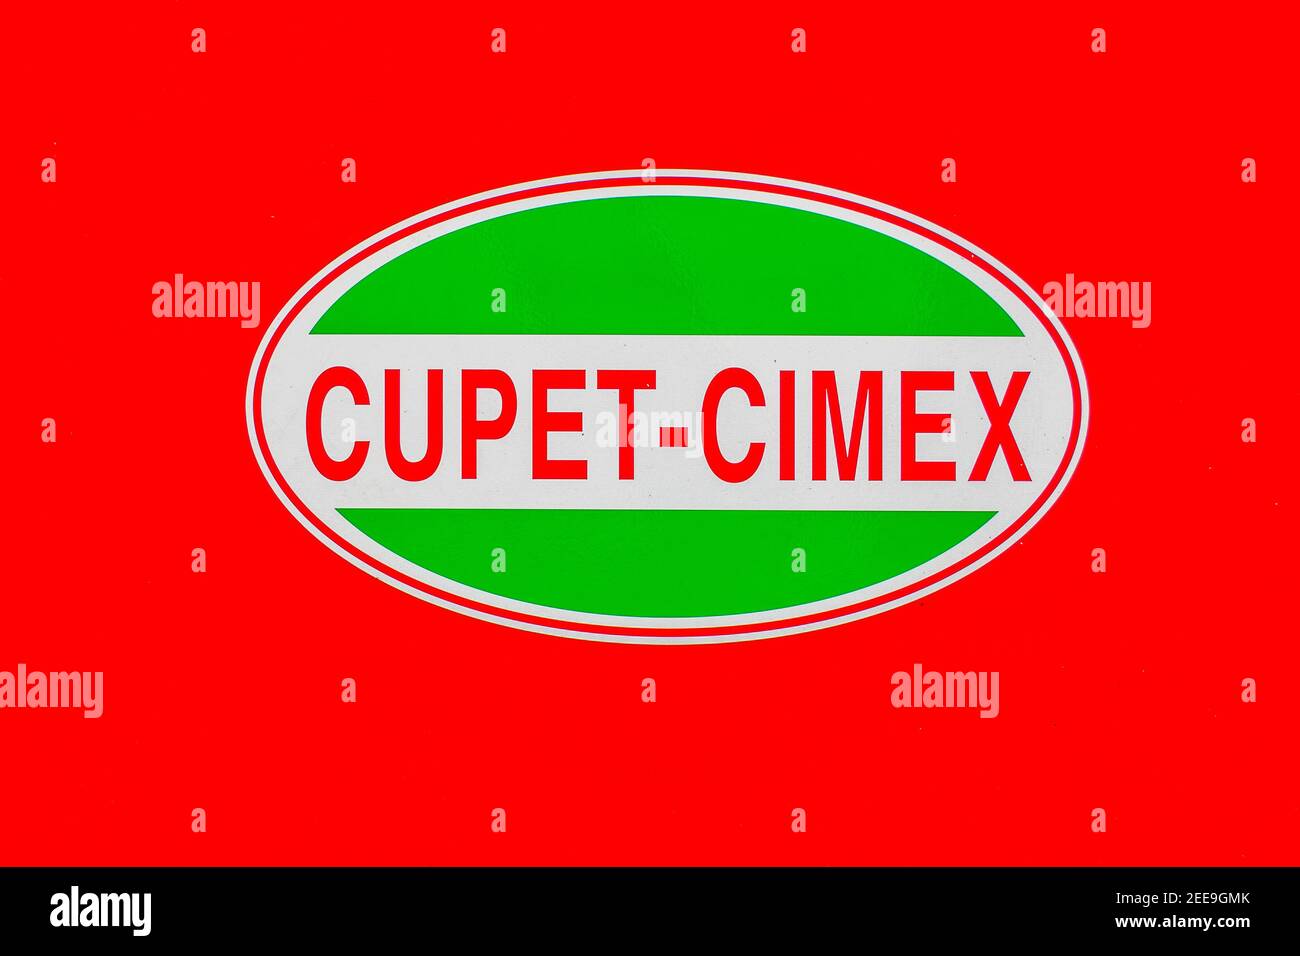 Logo Cupet-Cimex estampillé dans une pompe à gaz, Cupet-Cimex est le distributeur exclusif d'essence dans l'île des Caraïbes et est une entreprise publique Banque D'Images